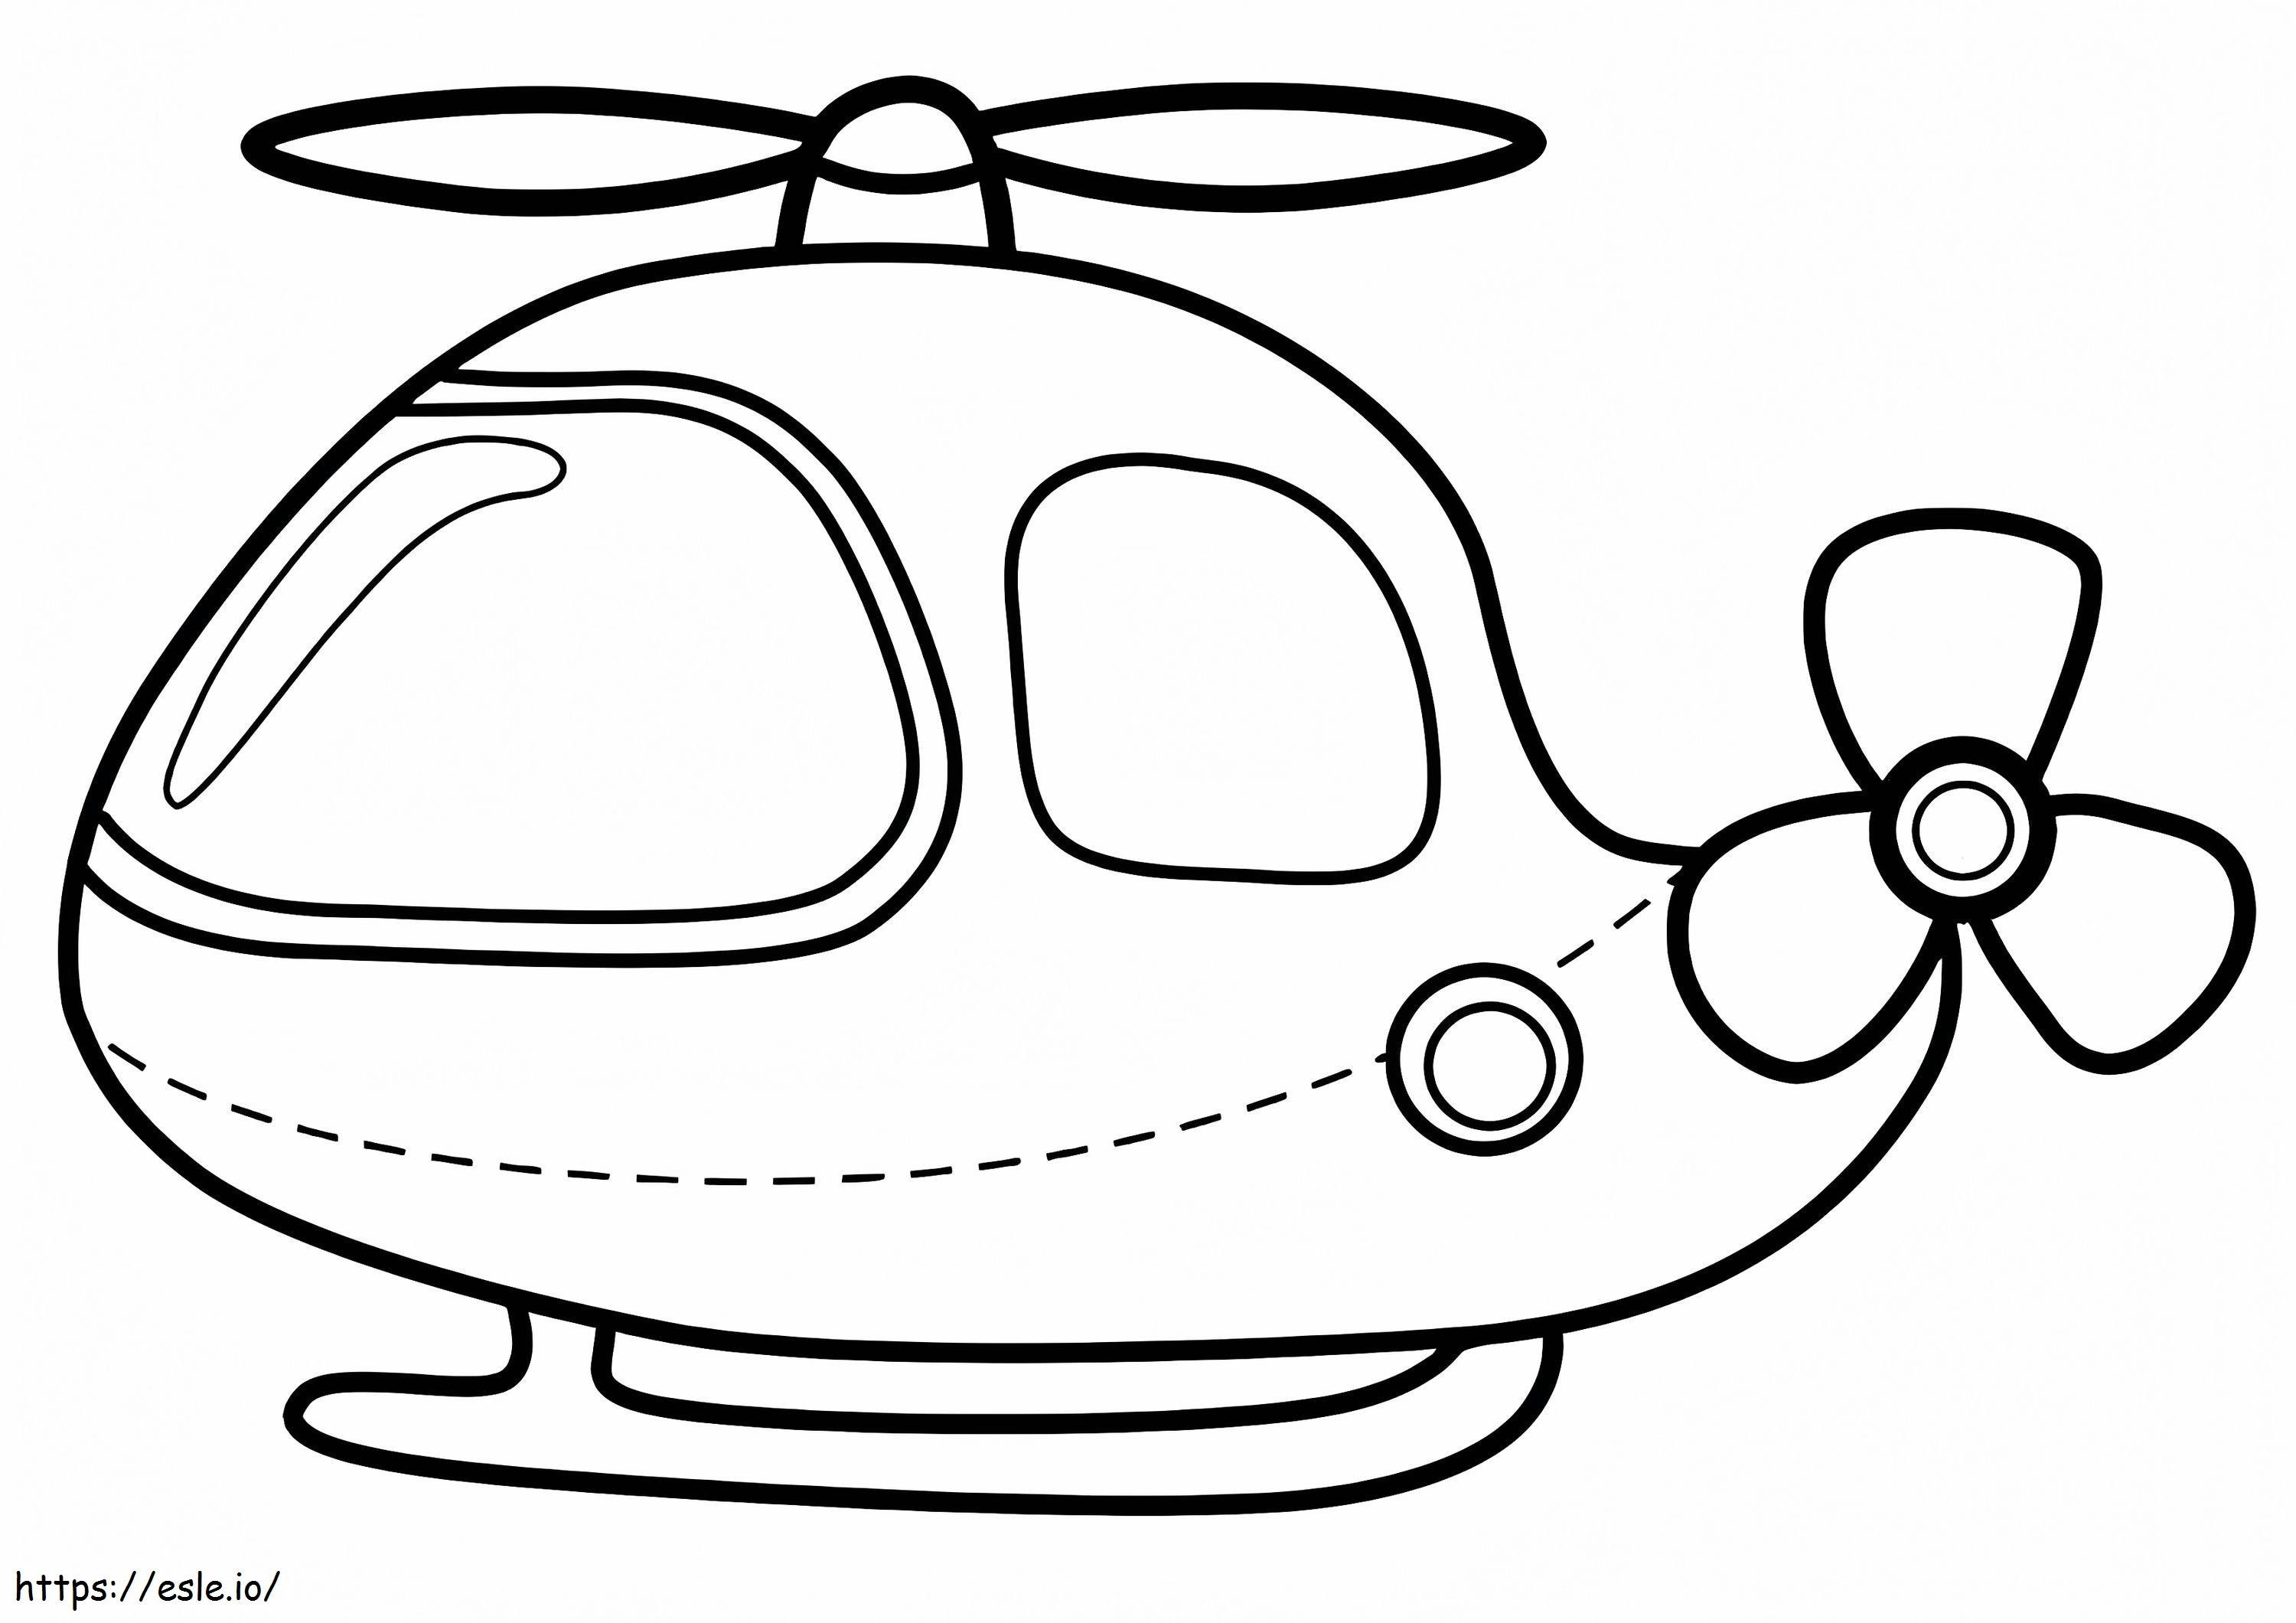  Um lindo helicóptero A4 E1600074315918 para colorir